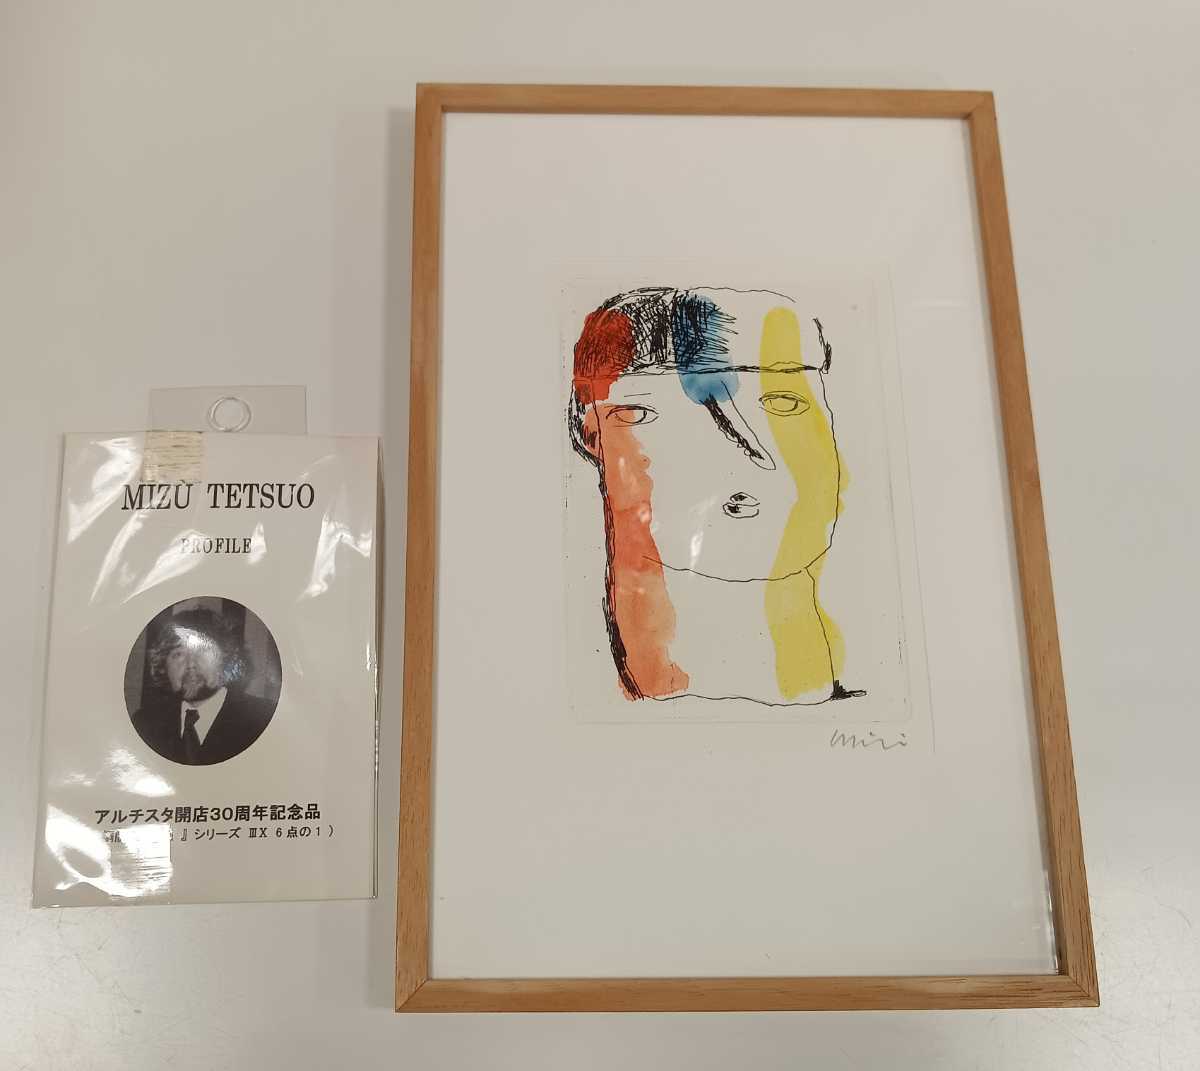 سلسلة وجه مطبوعة من Testuo Mizu Tetsuo Mizuشيما النحاسية IIIX 1 من 6 لوحة مطبوعة مؤطرة, عمل فني, تلوين, آحرون